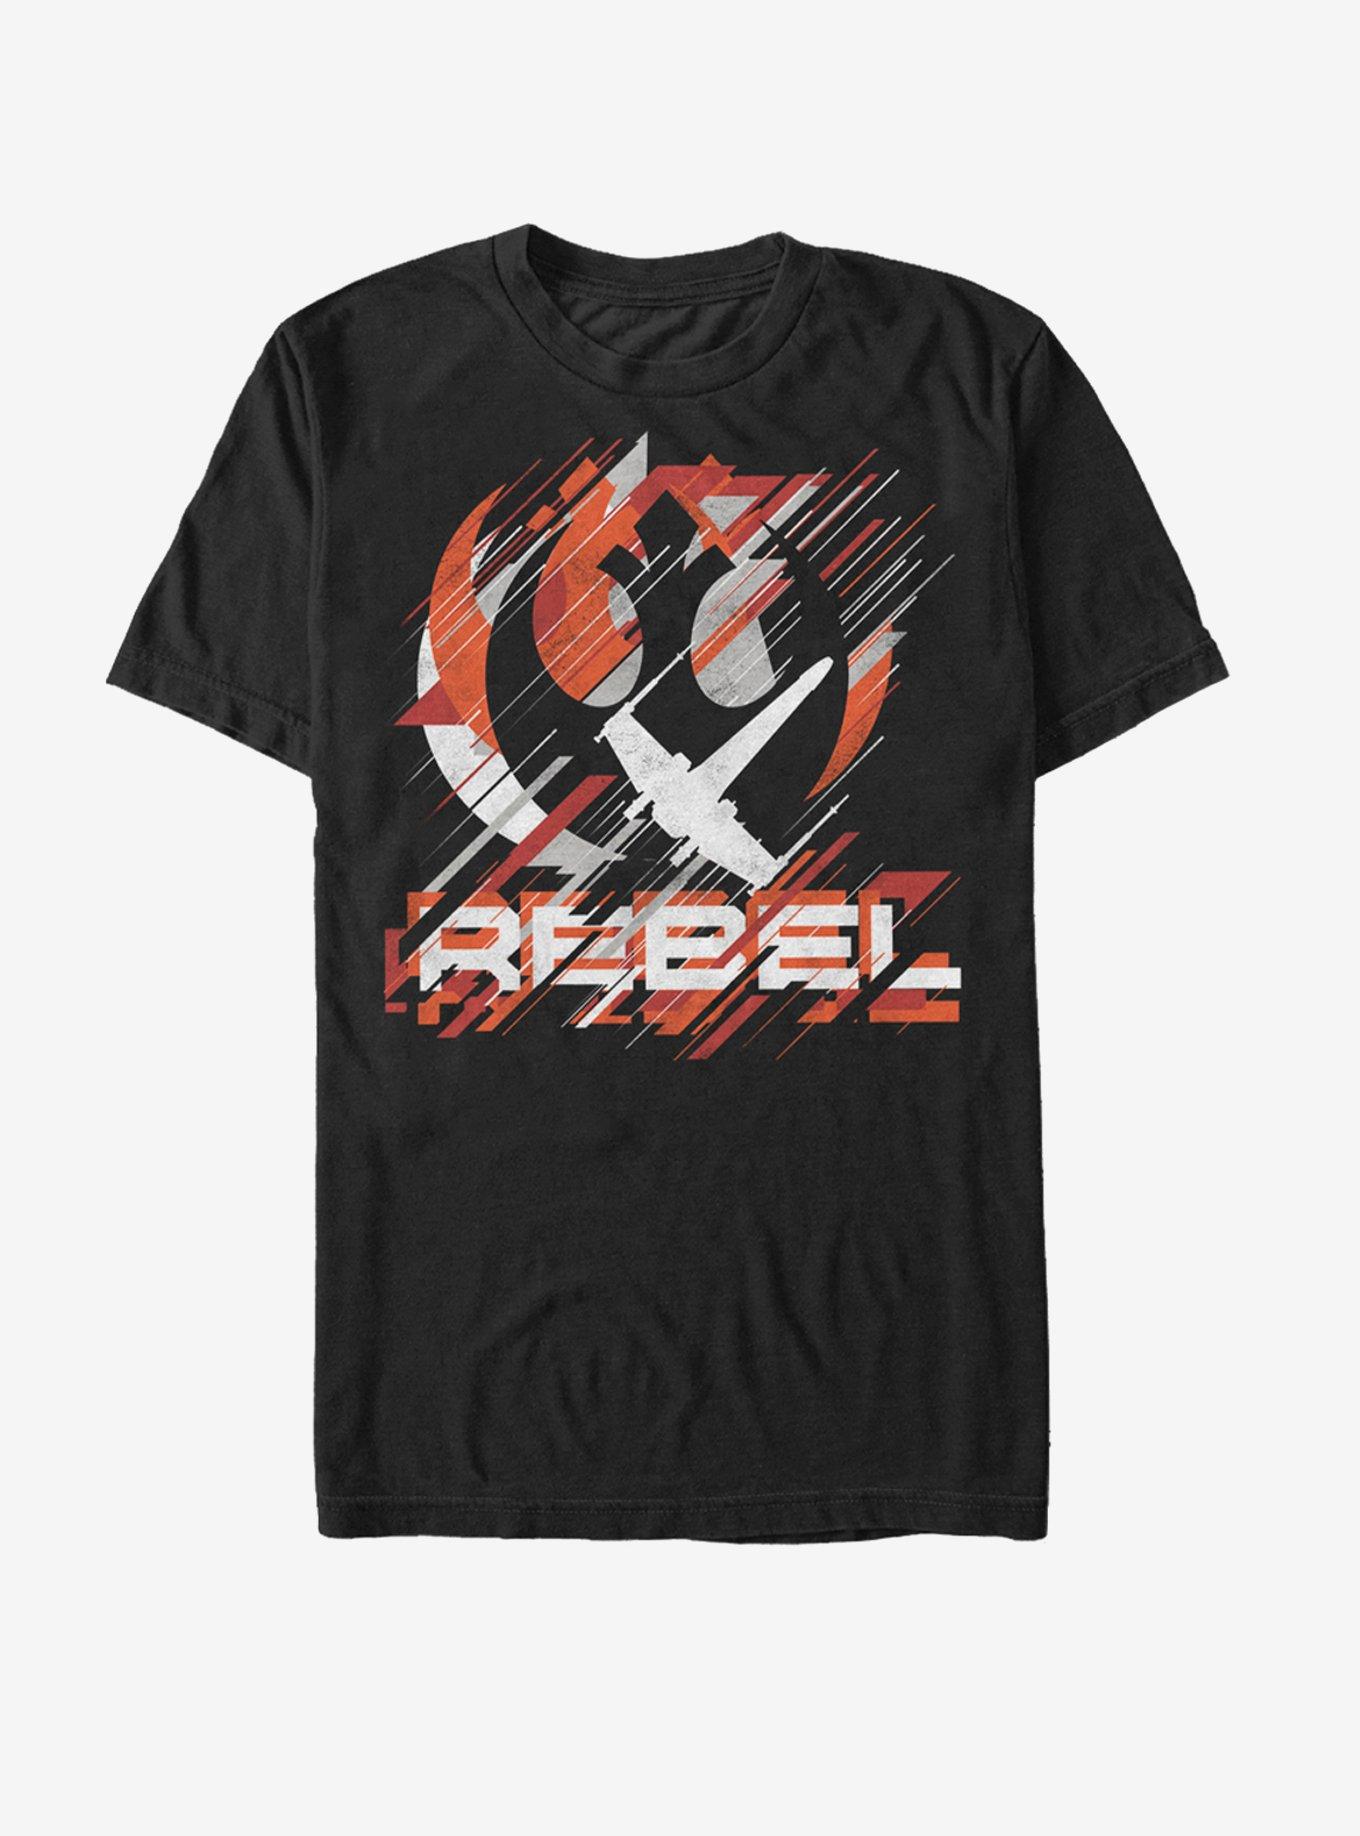 Star Wars Rebel Crest Streaks T-Shirt, BLACK, hi-res